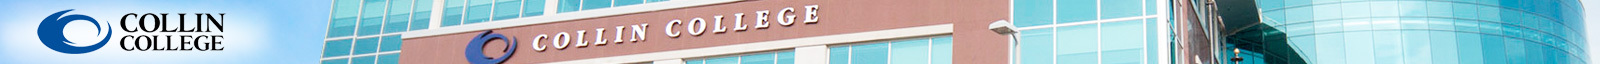 Collin College, TX  logo